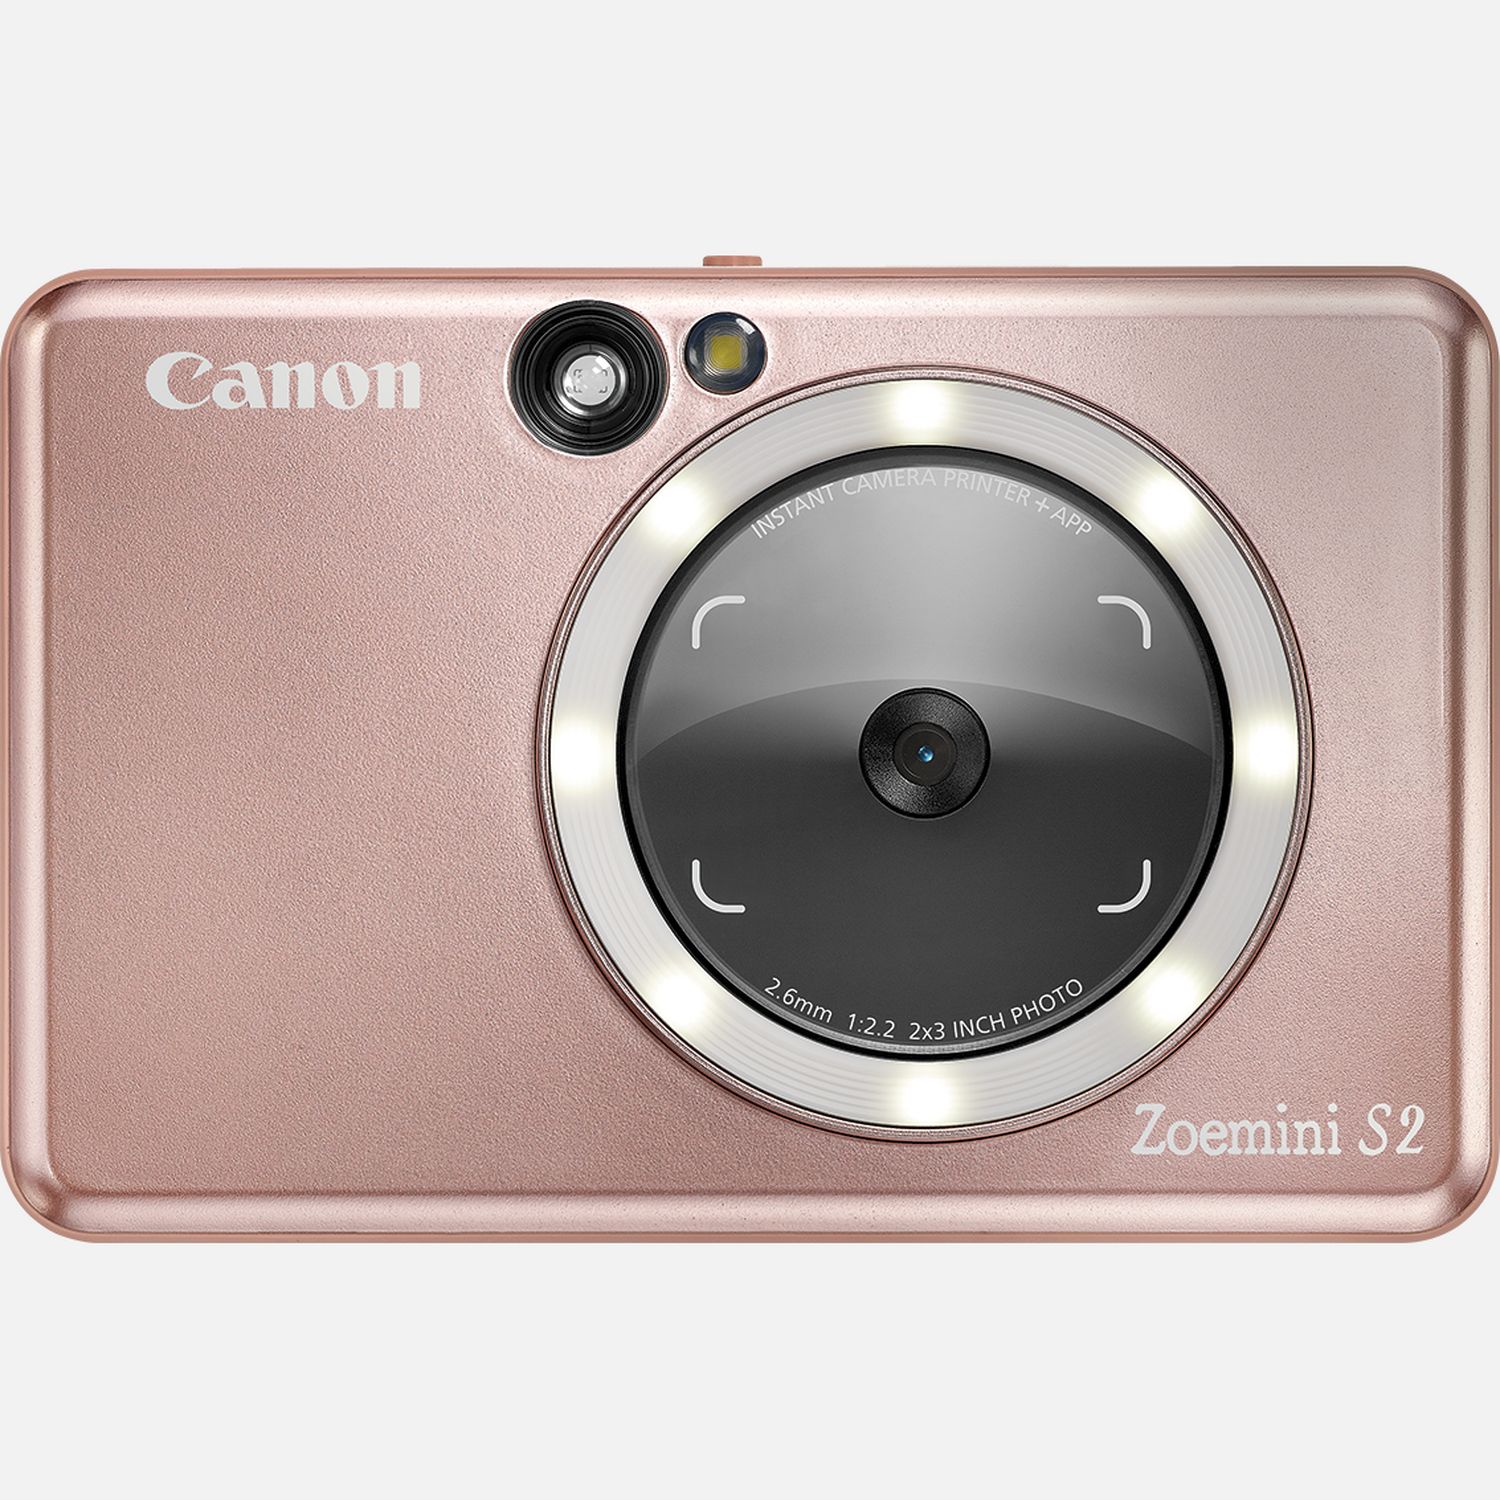 Fotocamera istantanea a colori Canon Zoemini S2, oro rosa in